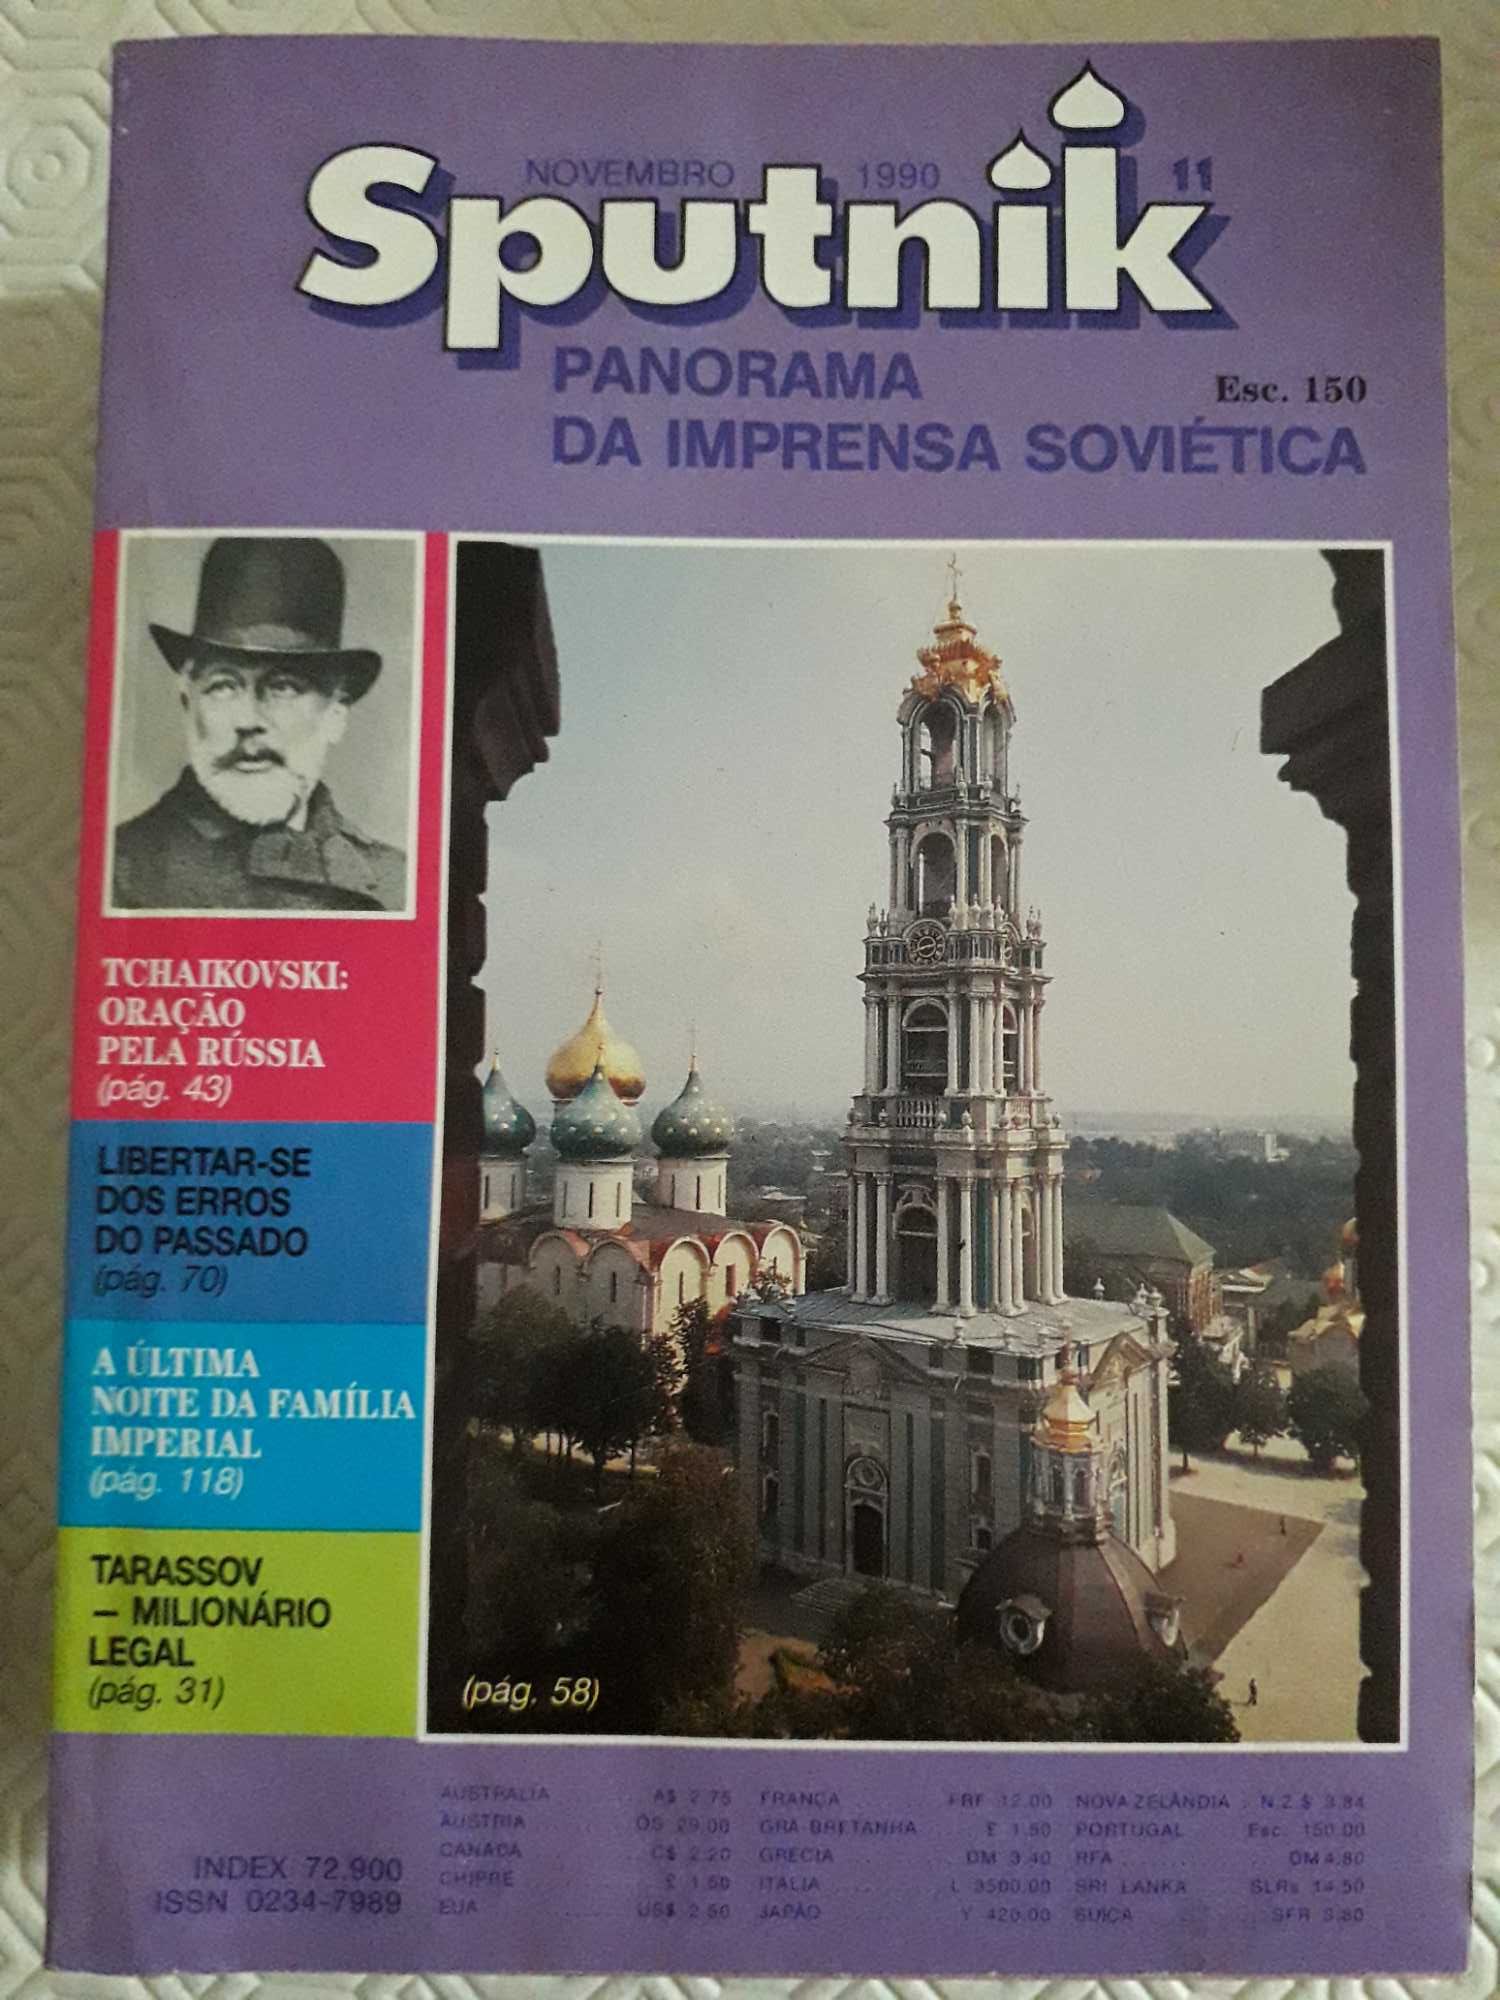 Sputnik - Panorama da Imprensa Soviética